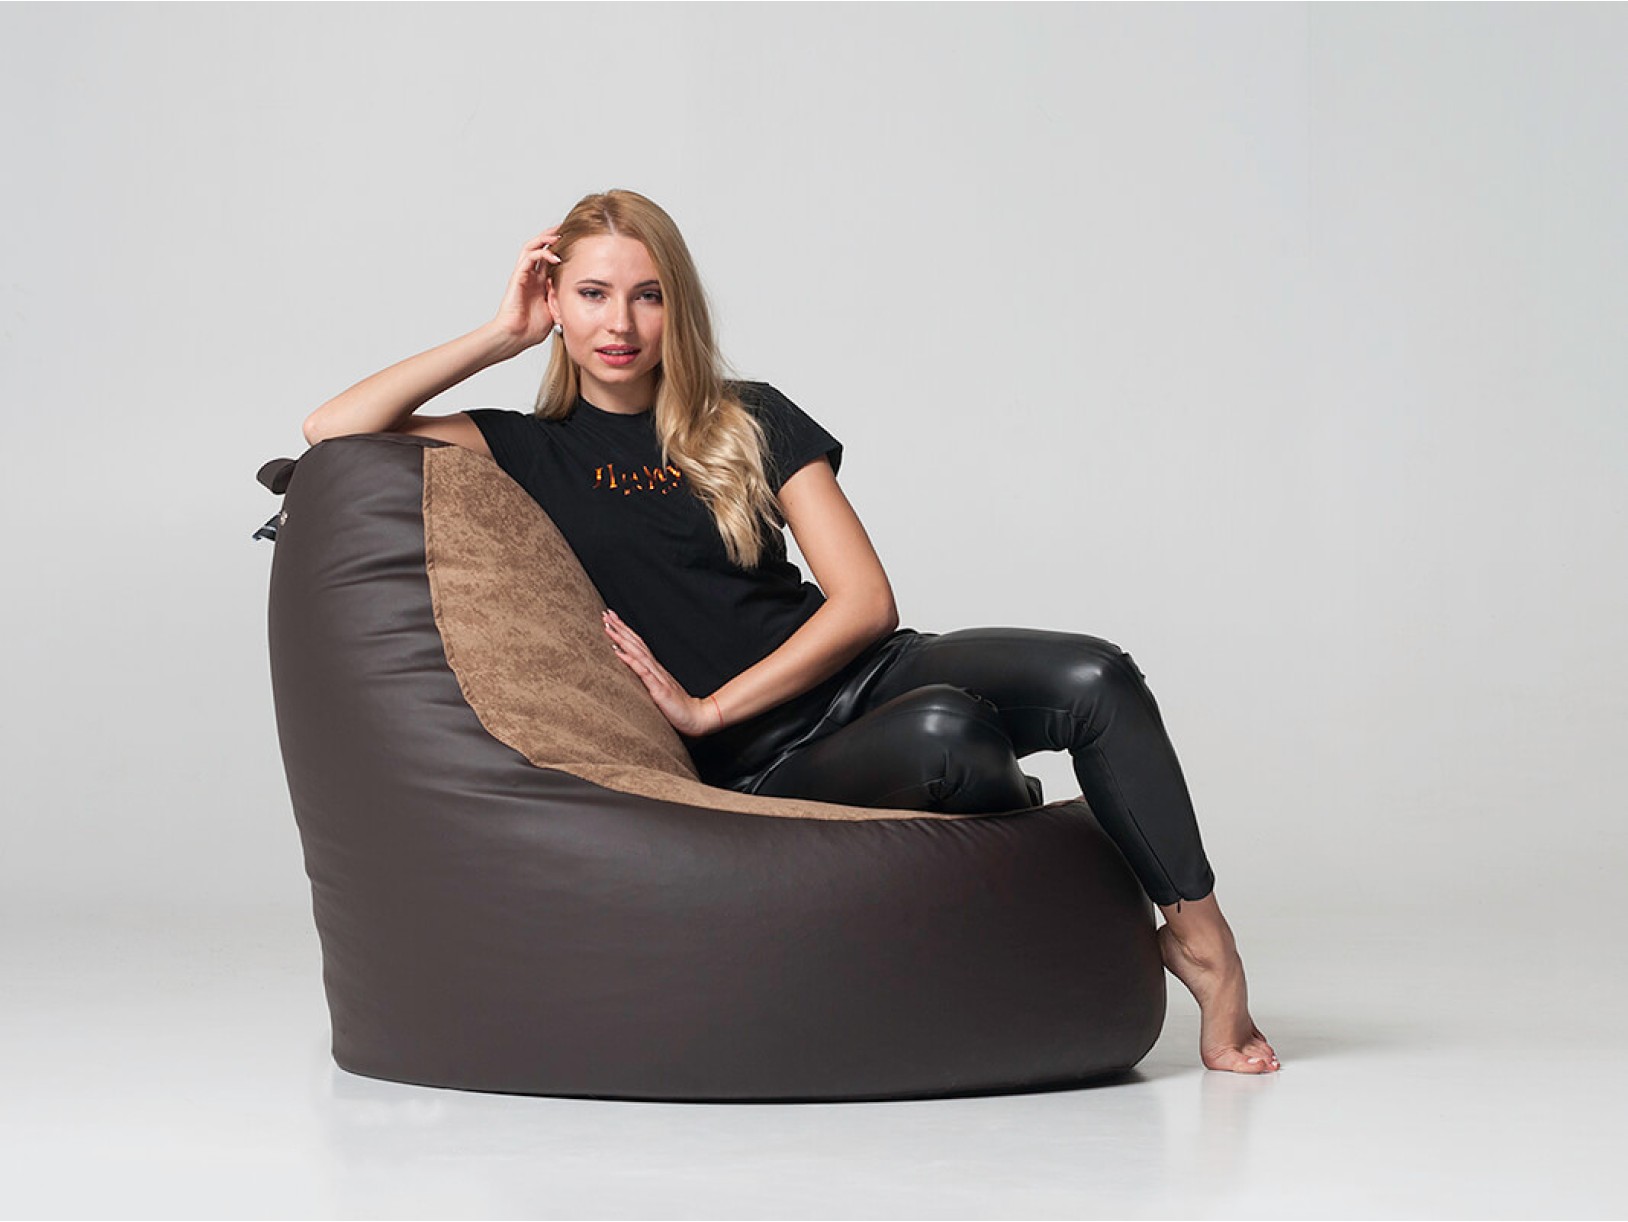 Кресло-мешок "Ибица Премиум", основа: ткань Zeus Deluxe Brown, сидение: ткань New York Nougat - Pufic.com.ua